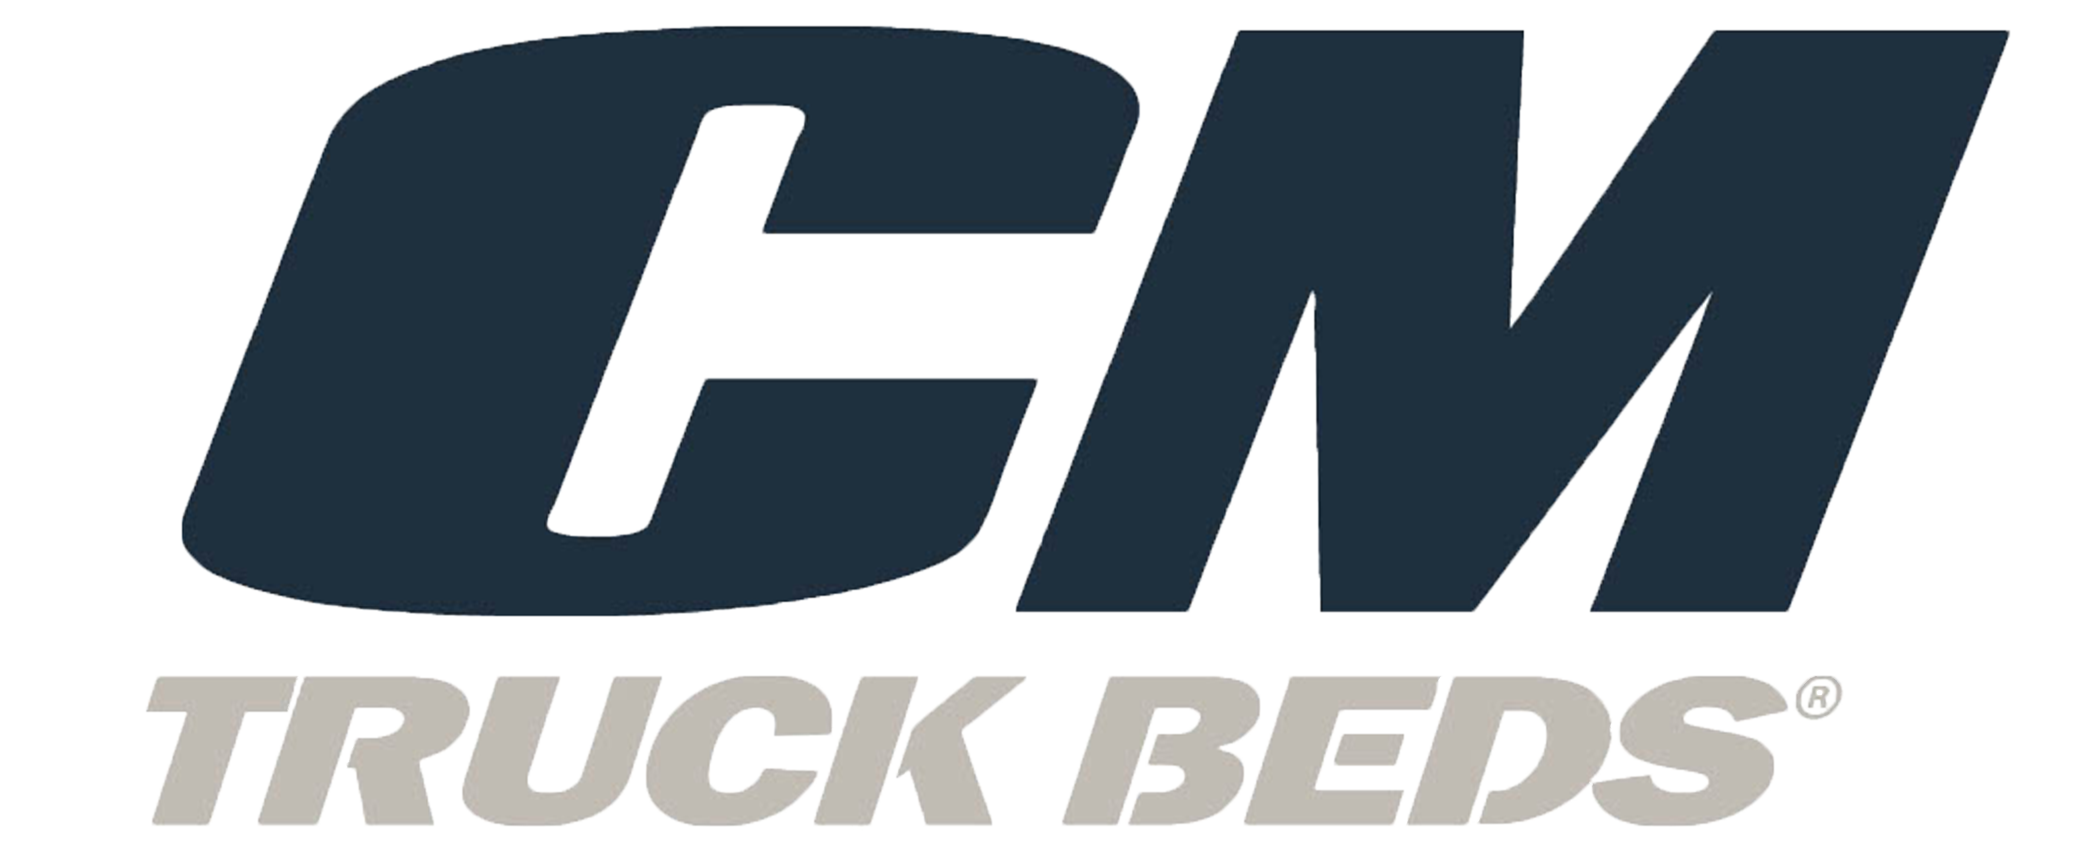 CM Truck Beds logo